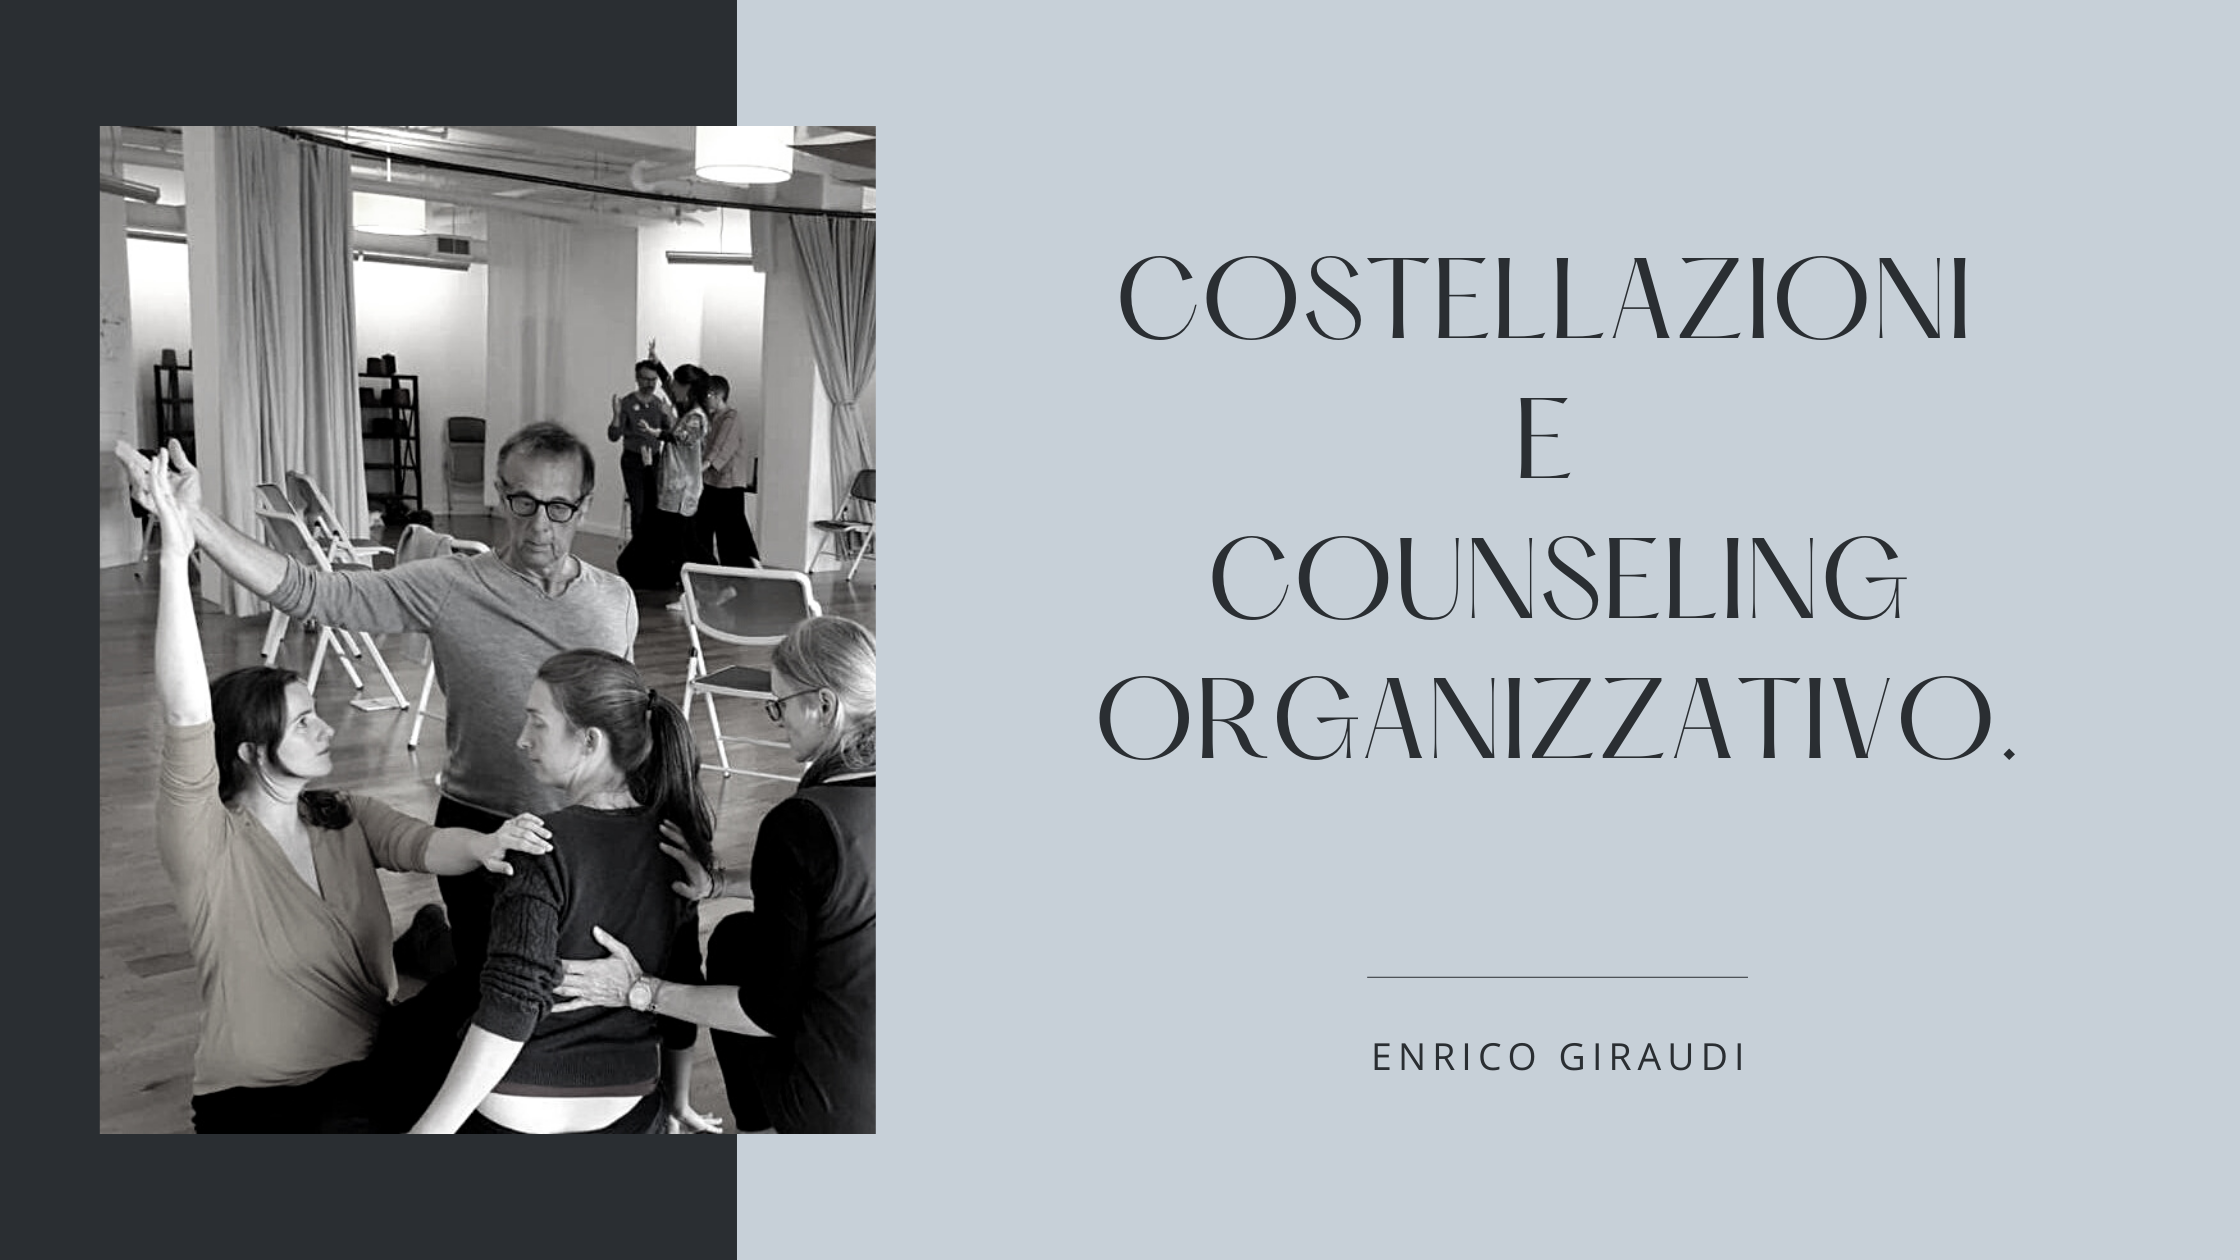 Costellazioni Counseling organizzativo Enrico Giraudi Graziella Nugnes